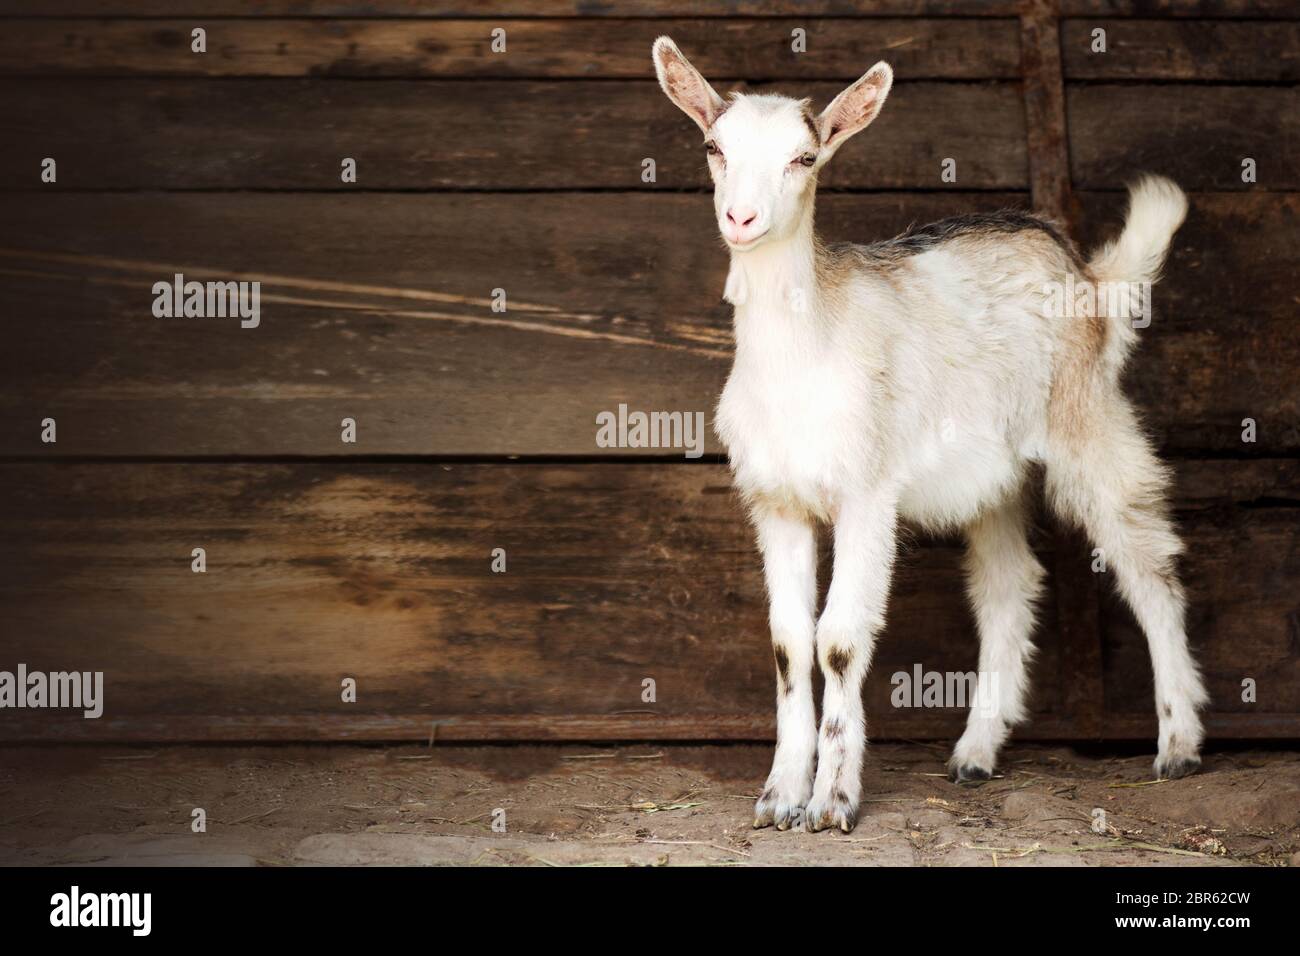 Le jeune animal domestique de chèvre blanc est debout sur fond brun, concept de reproduction de chèvre. Banque D'Images